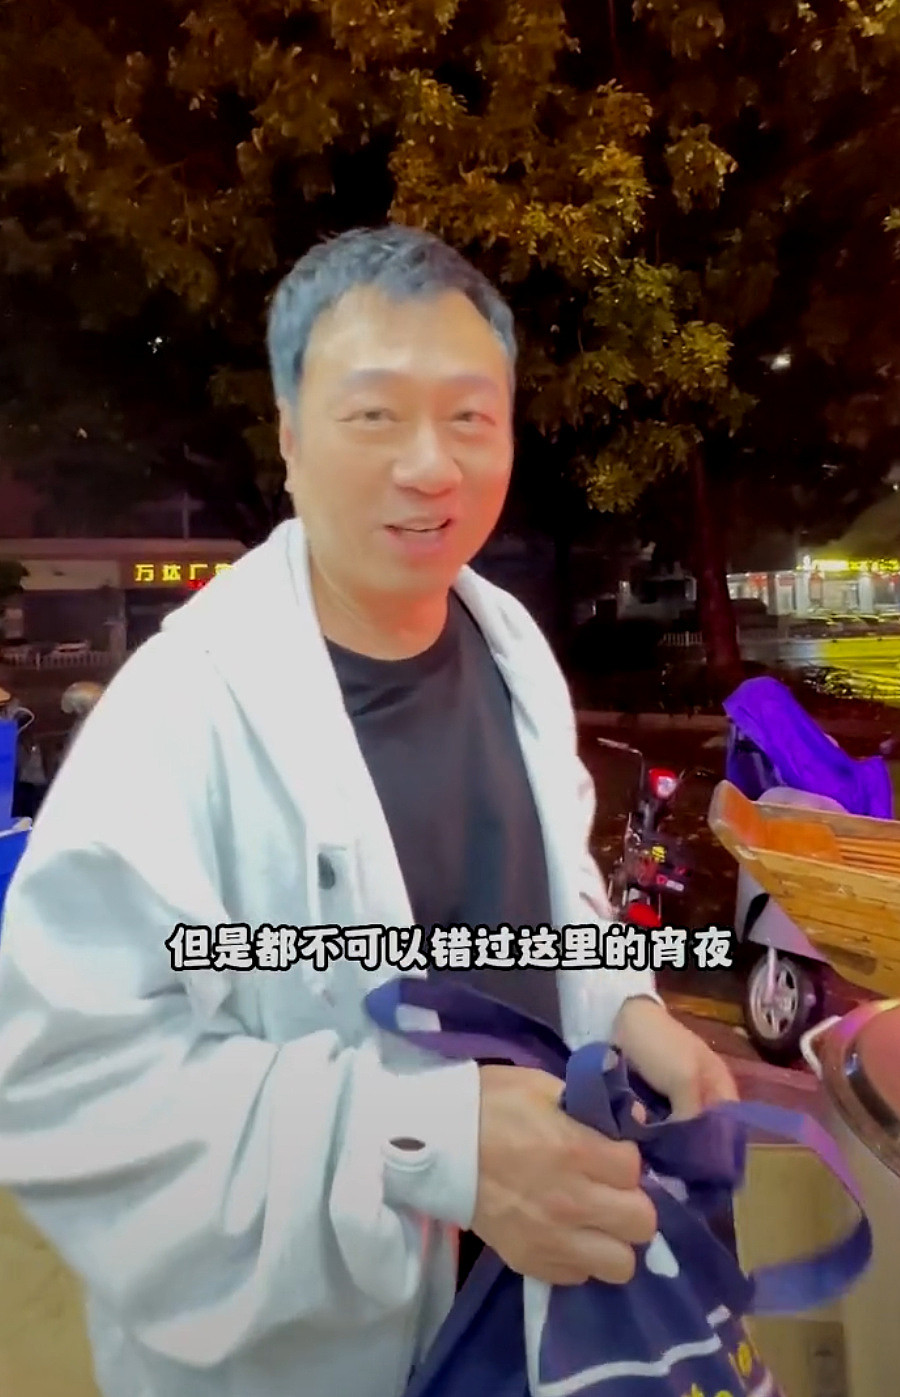 黎耀祥自带大锅去买粥与众多街坊合影 将参与内地平台合作的处境剧 - 1